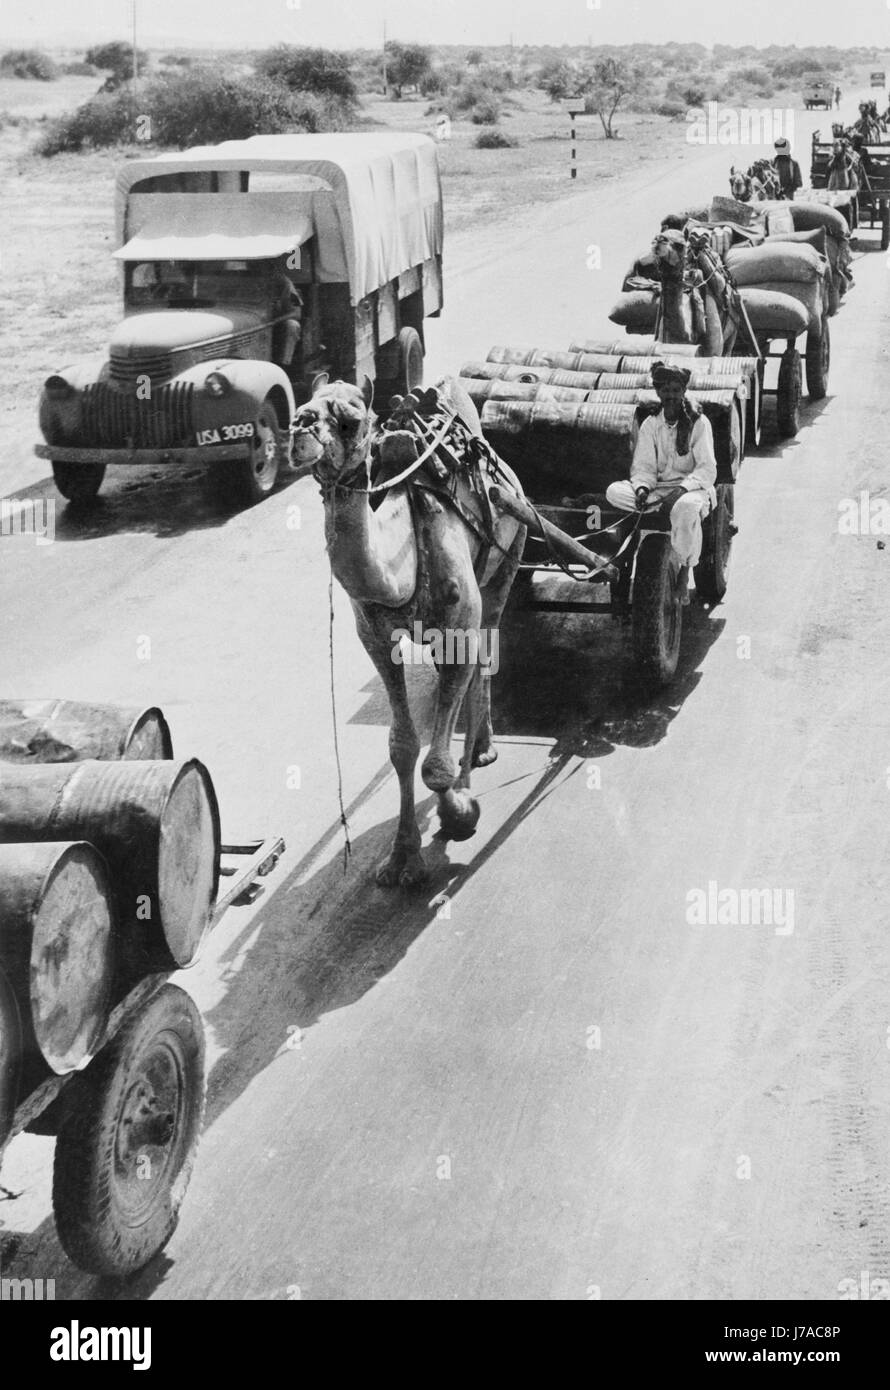 Krieg-Versorgungsmaterialien werden von Kamelen auf einer Autobahn in Indien, ca. 1942 transportiert. Stockfoto